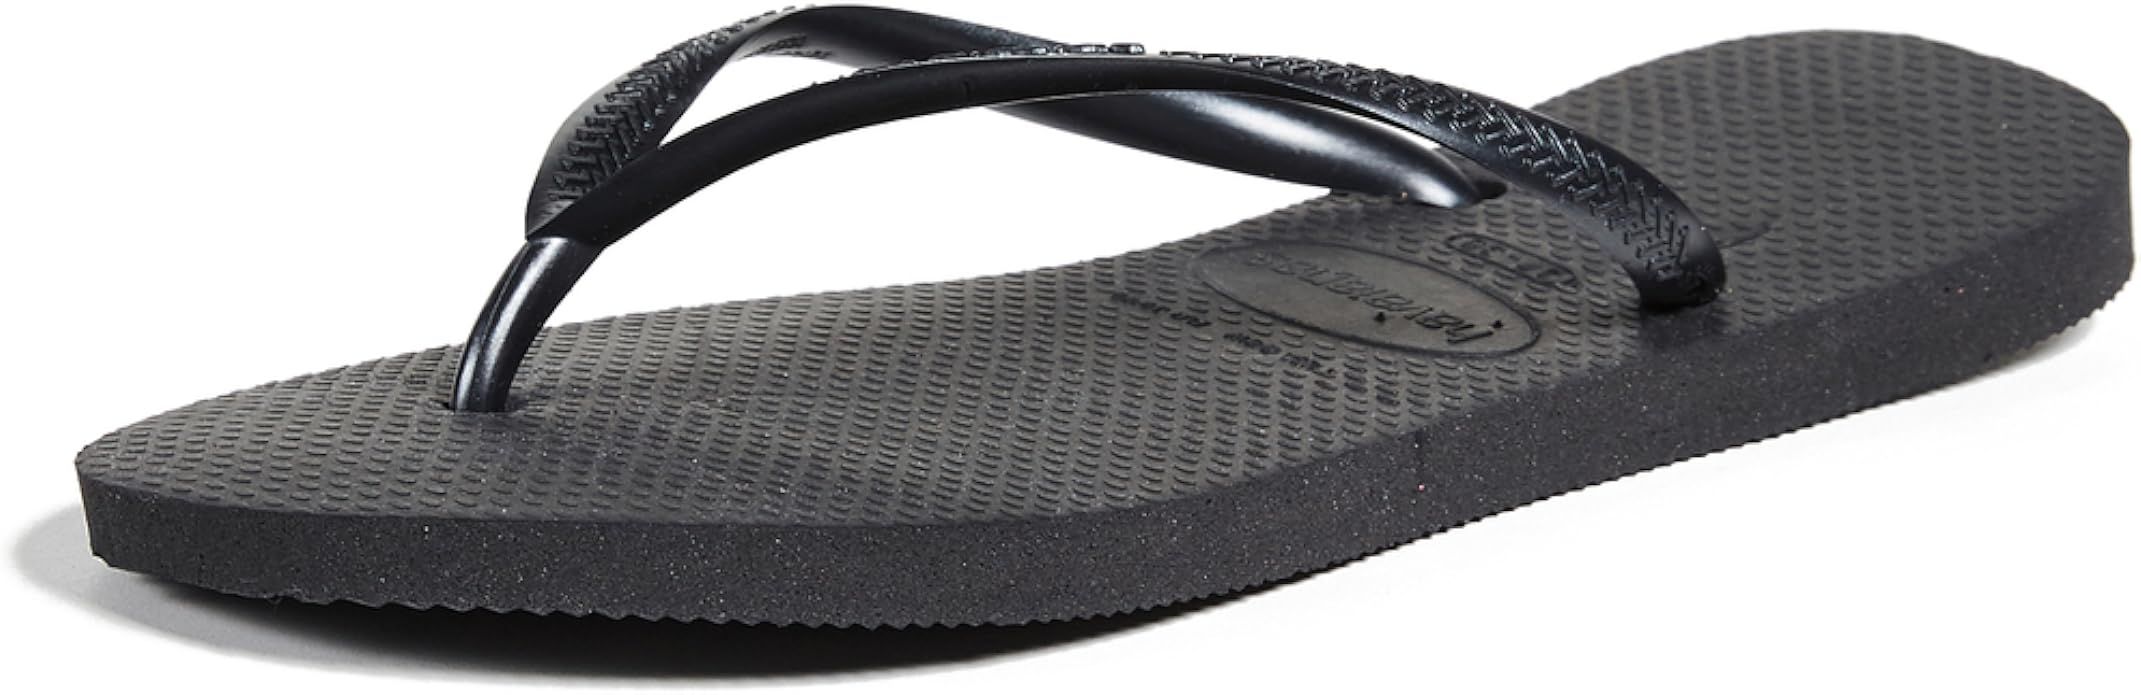 Havaianas Hav. Slim, Women's Flip Flop Sandals | Amazon (UK)